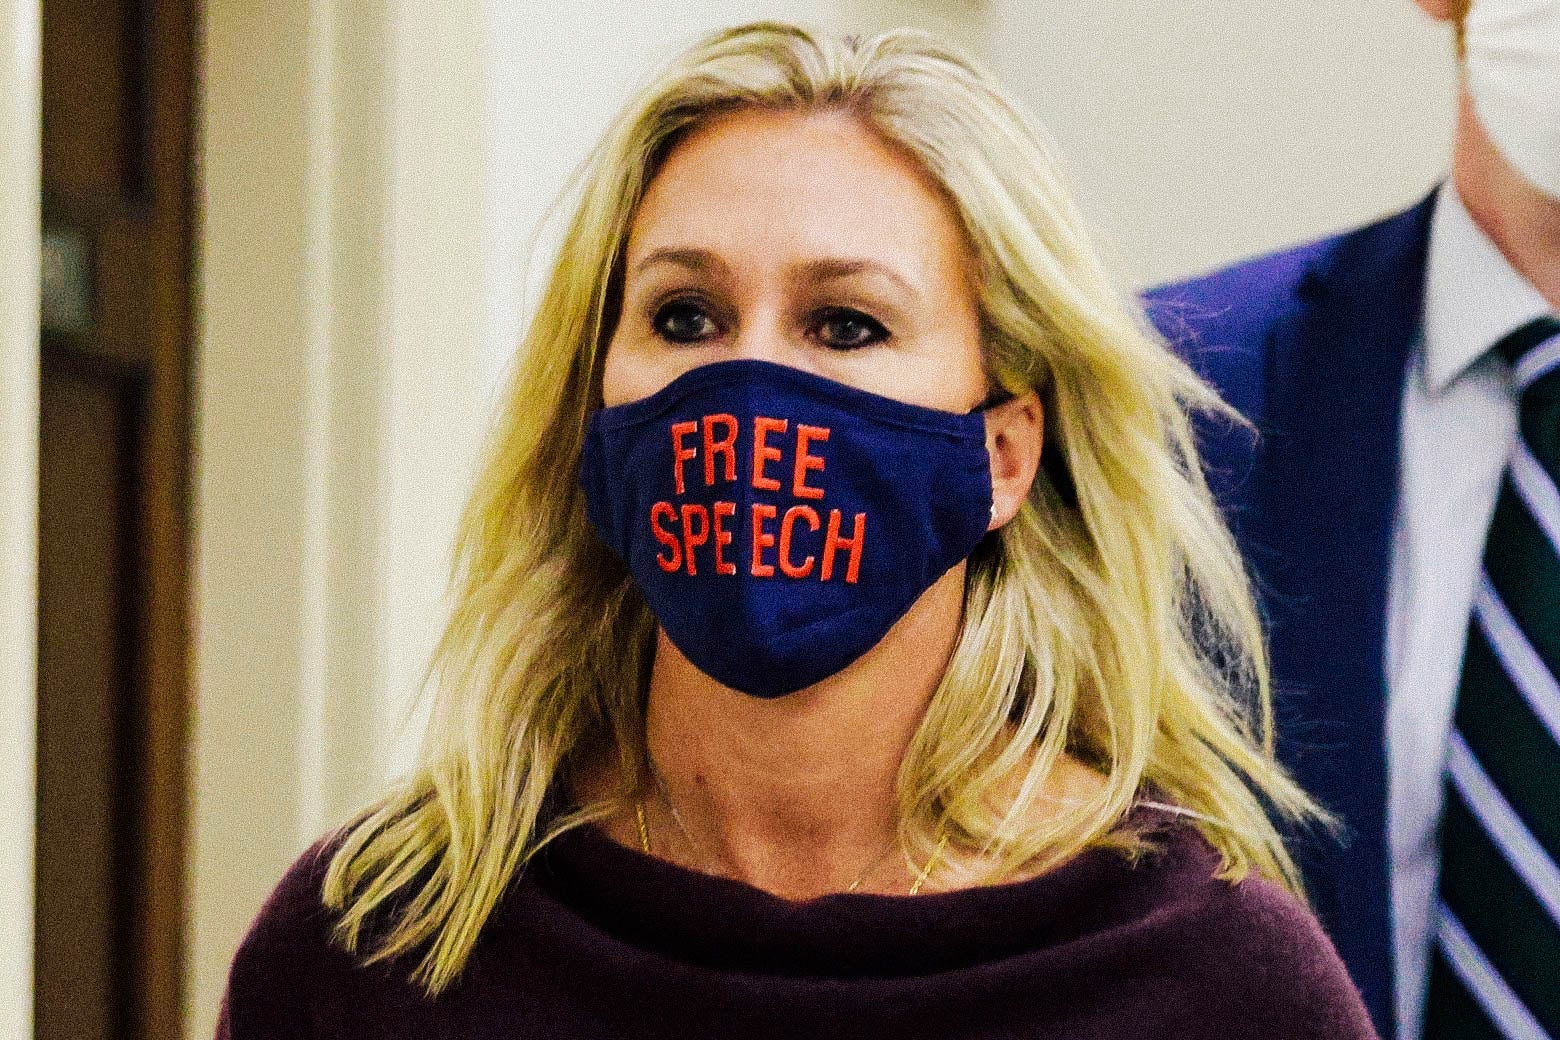 Marjorie Taylor Greene wears a face mask that reads "Free Speech."